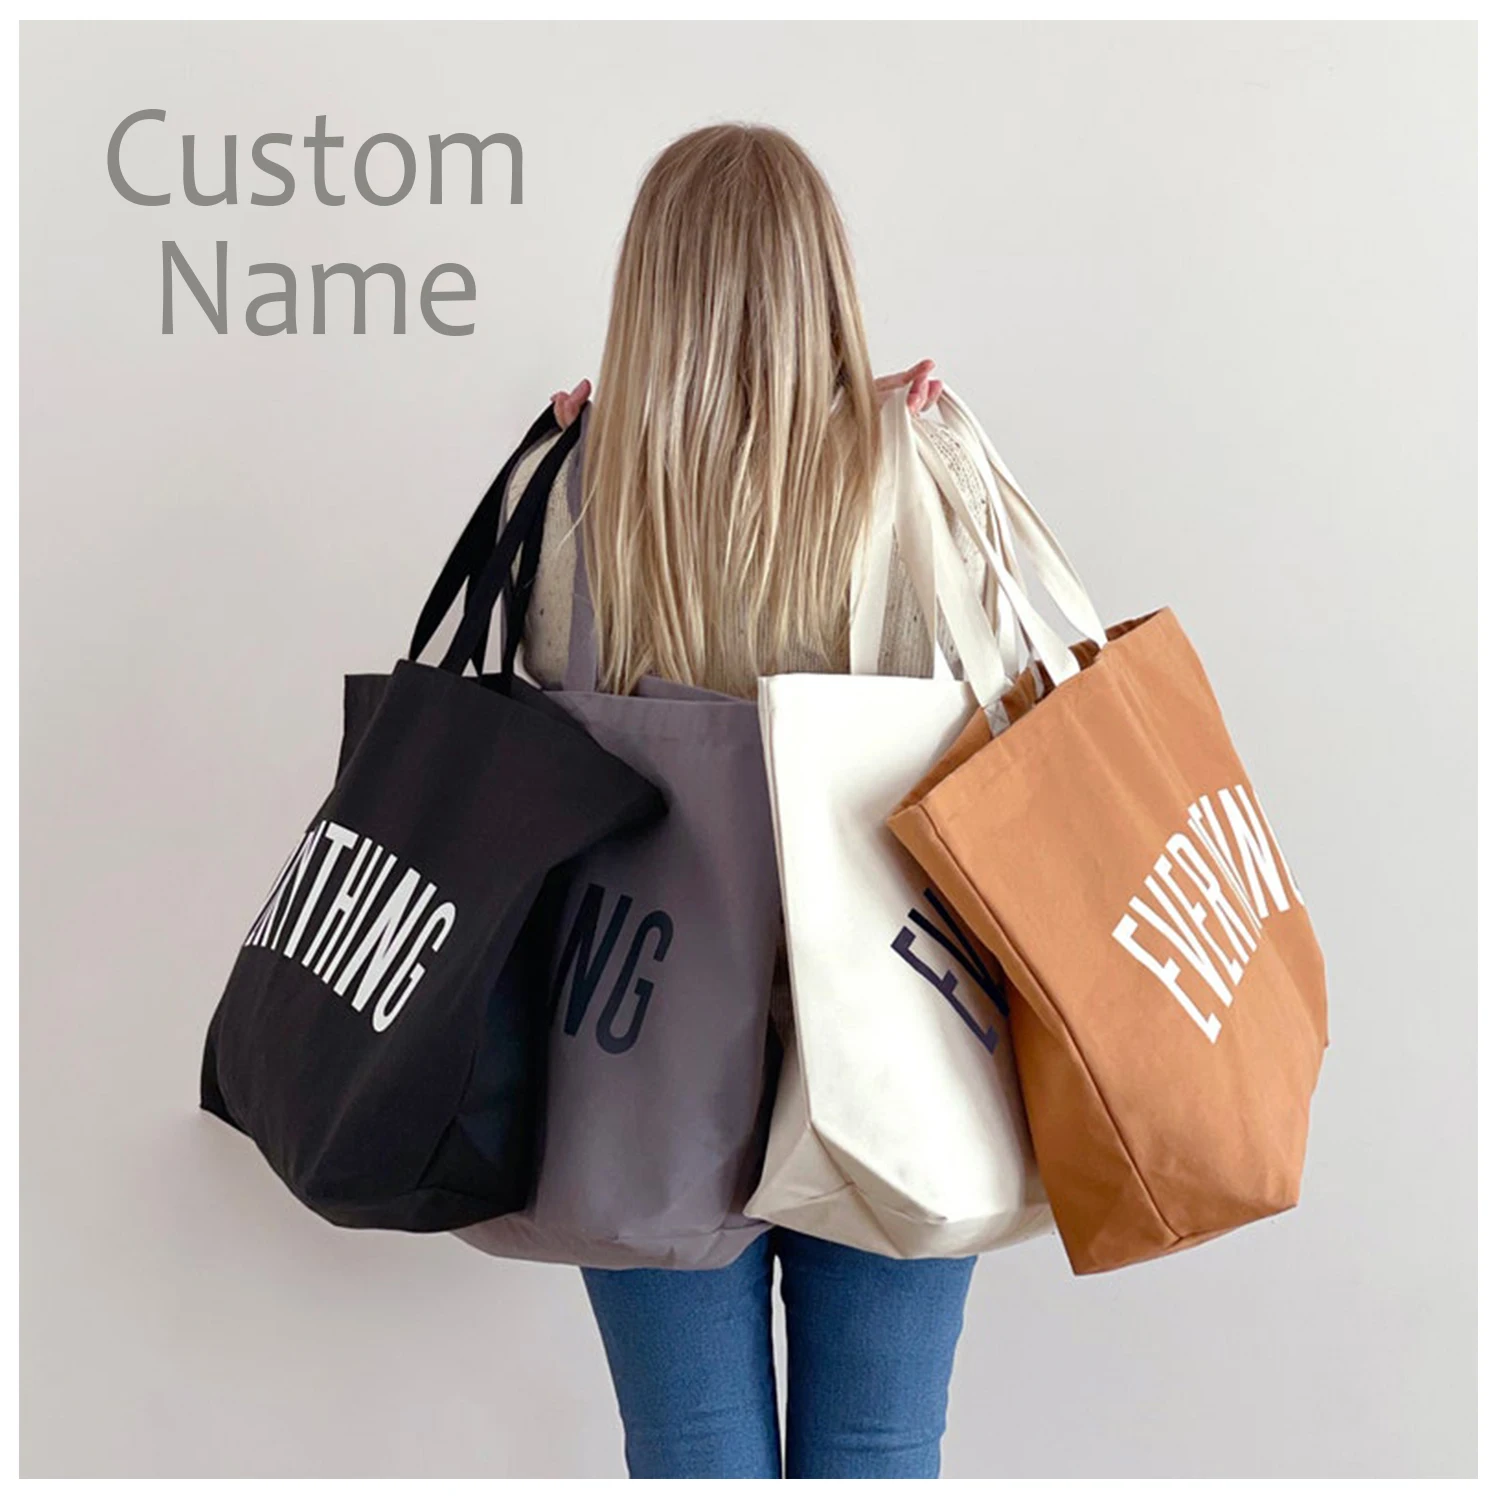 Custom Tote Bag, Name Tote Bag, Canvas Tote Bag, Market Bag